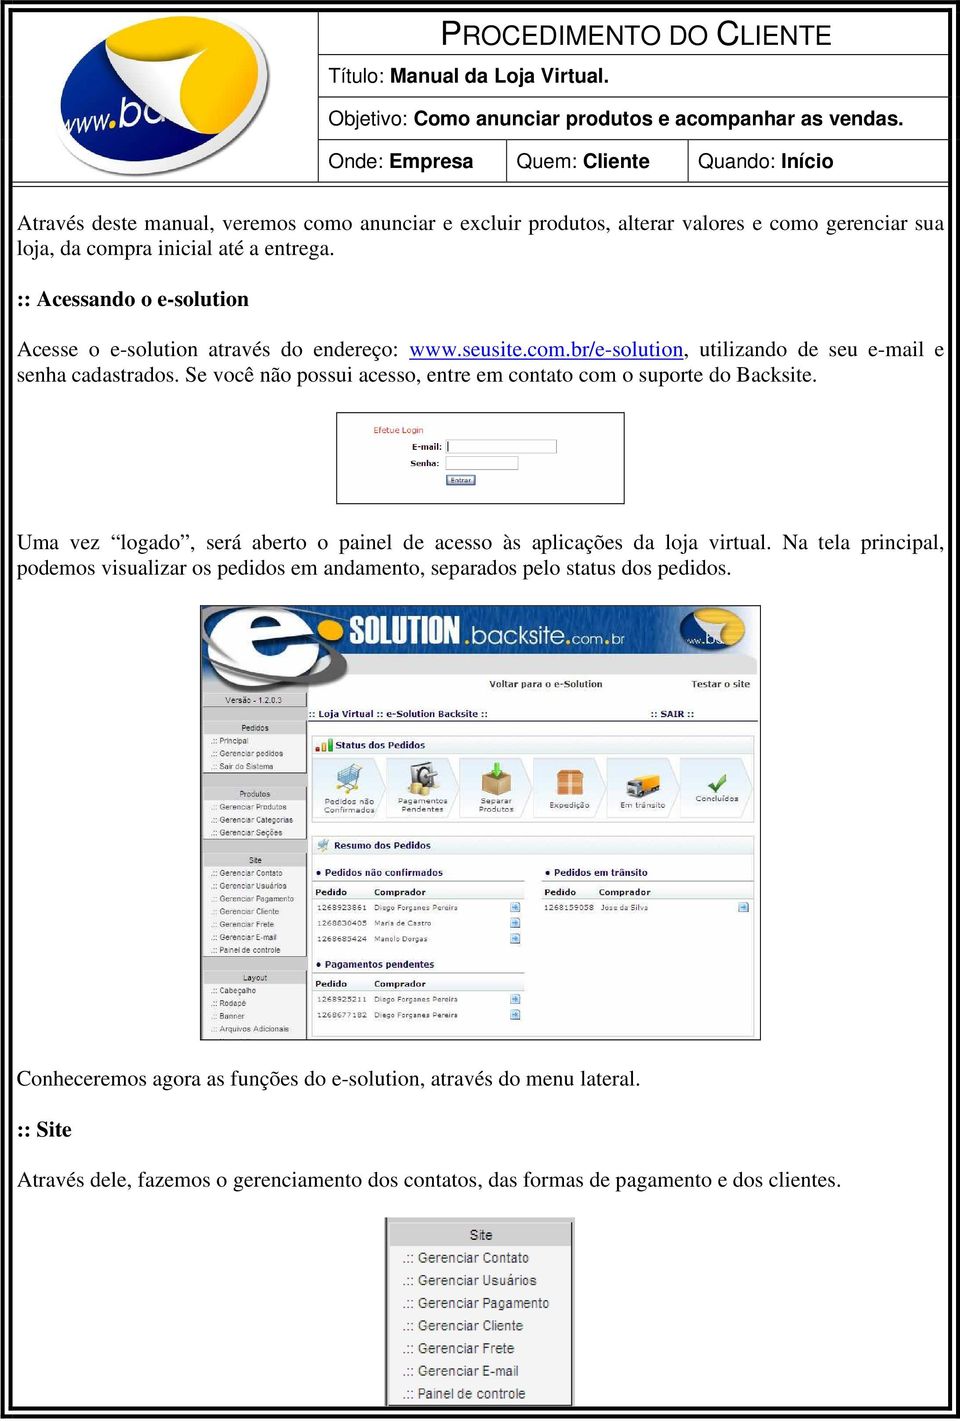 :: Acessando o e-solution Acesse o e-solution através do endereço: www.seusite.com.br/e-solution, utilizando de seu e-mail e senha cadastrados.